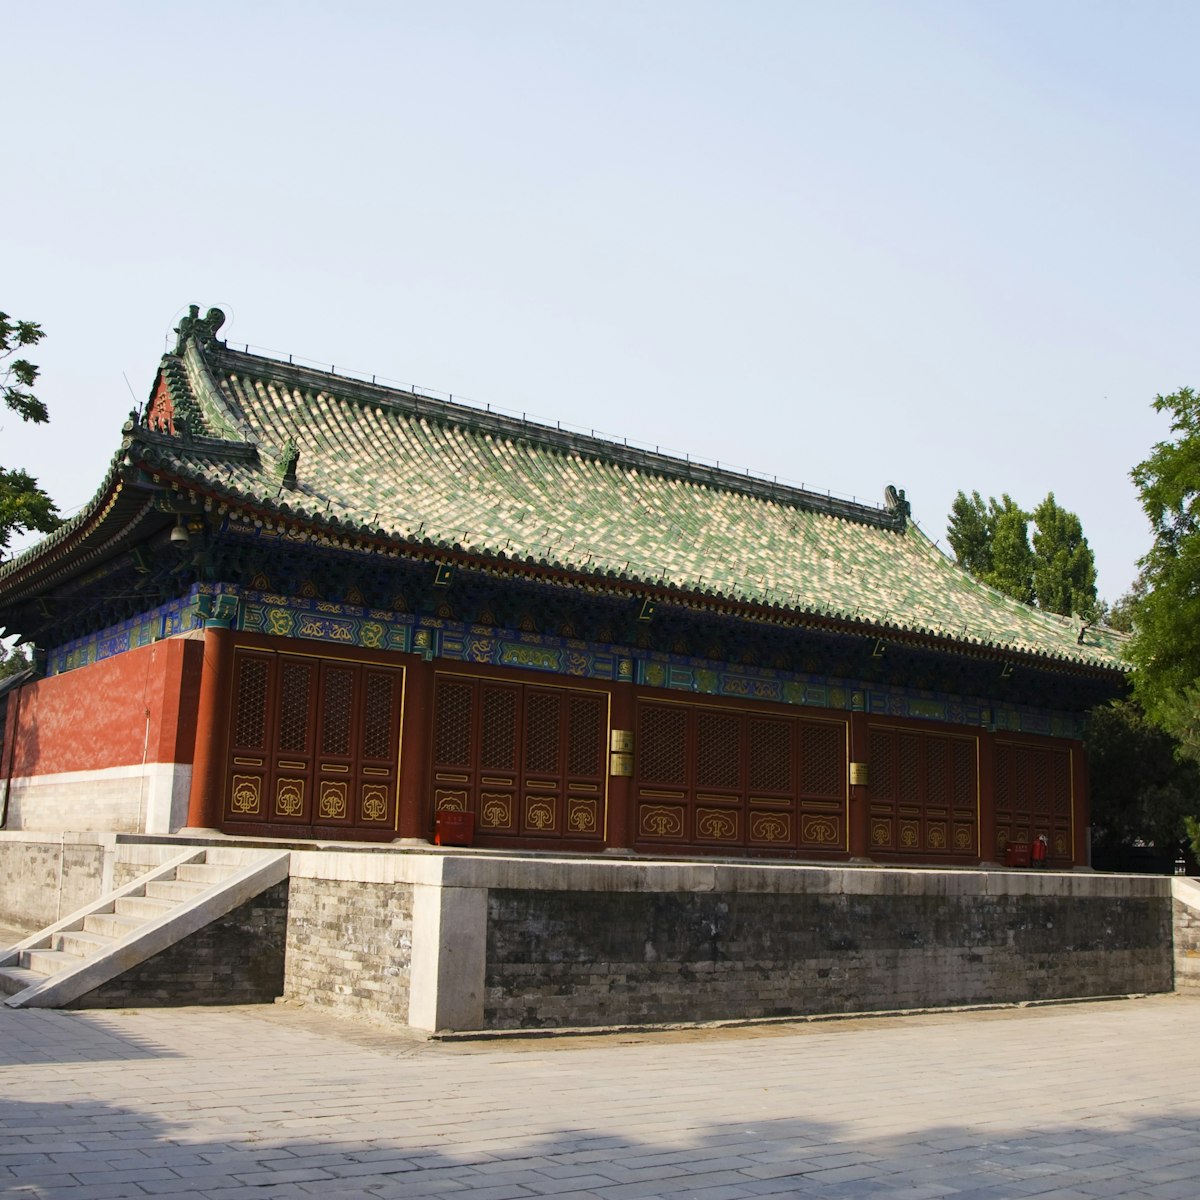 Beijing Ancient Architecture Museum (Gudai Jianzhu Bowuguan).